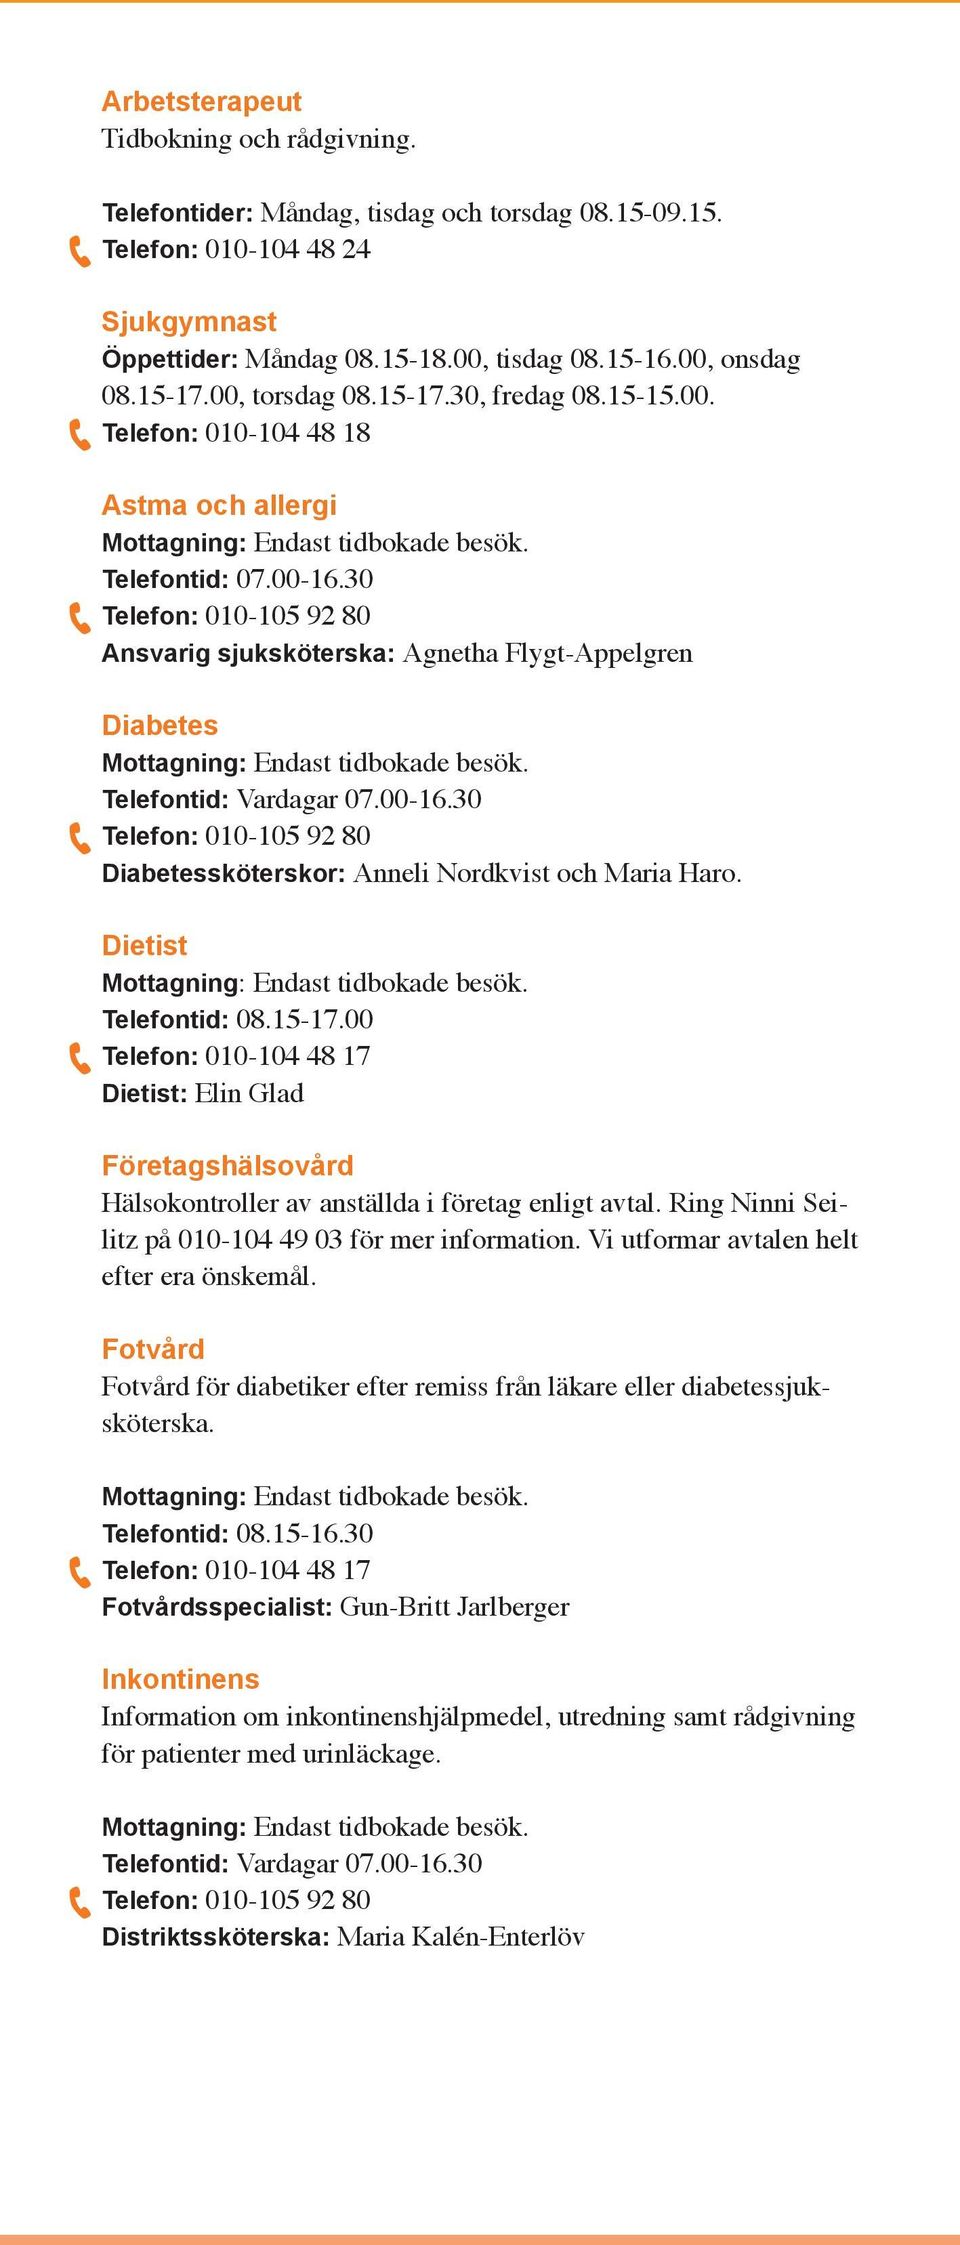 30 Ansvarig sjuksköterska: Agnetha Flygt-Appelgren Diabetes Diabetessköterskor: Anneli Nordkvist och Maria Haro. Dietist Telefontid: 08.15-17.